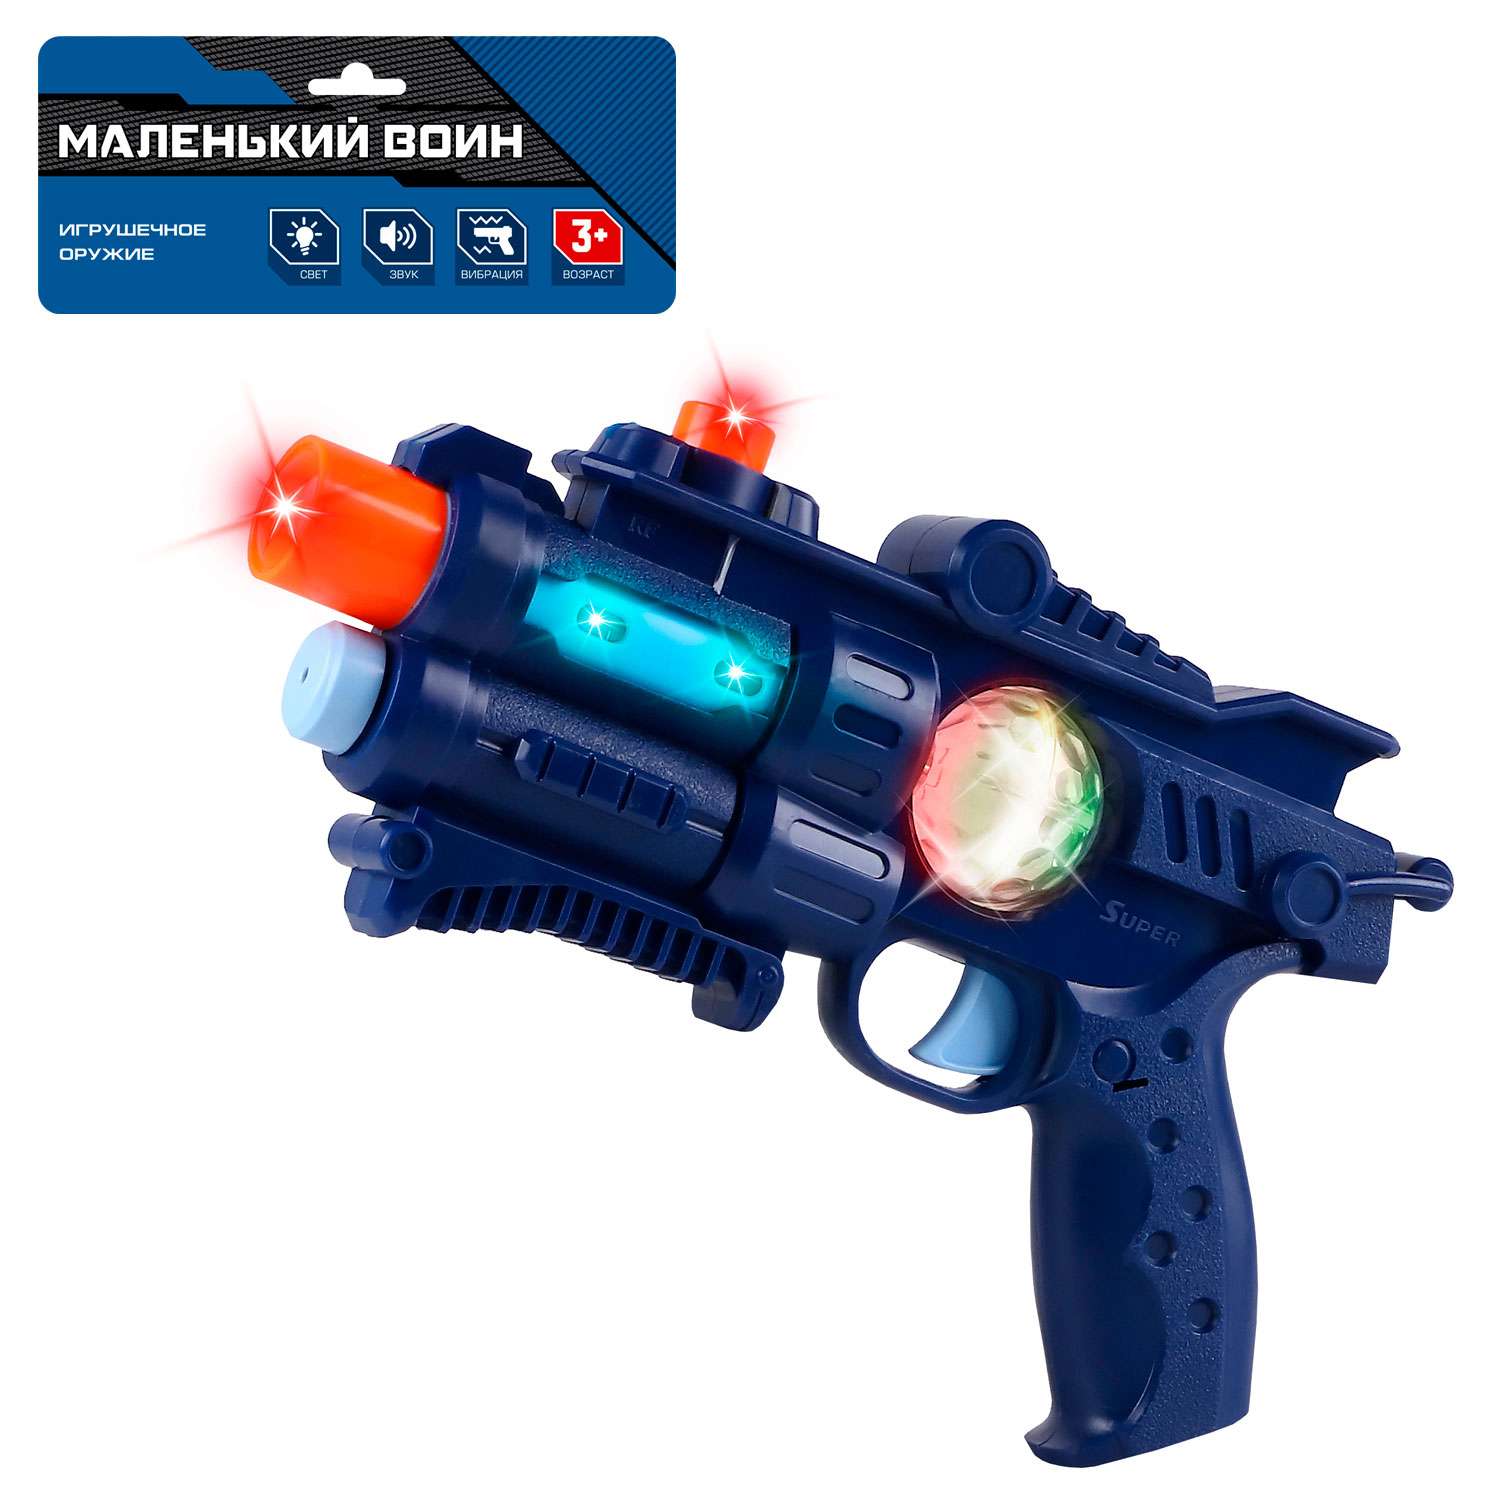 Игрушечное оружие Маленький Воин Пистолет на батарейках со звуком и светом JB0211472 - фото 4